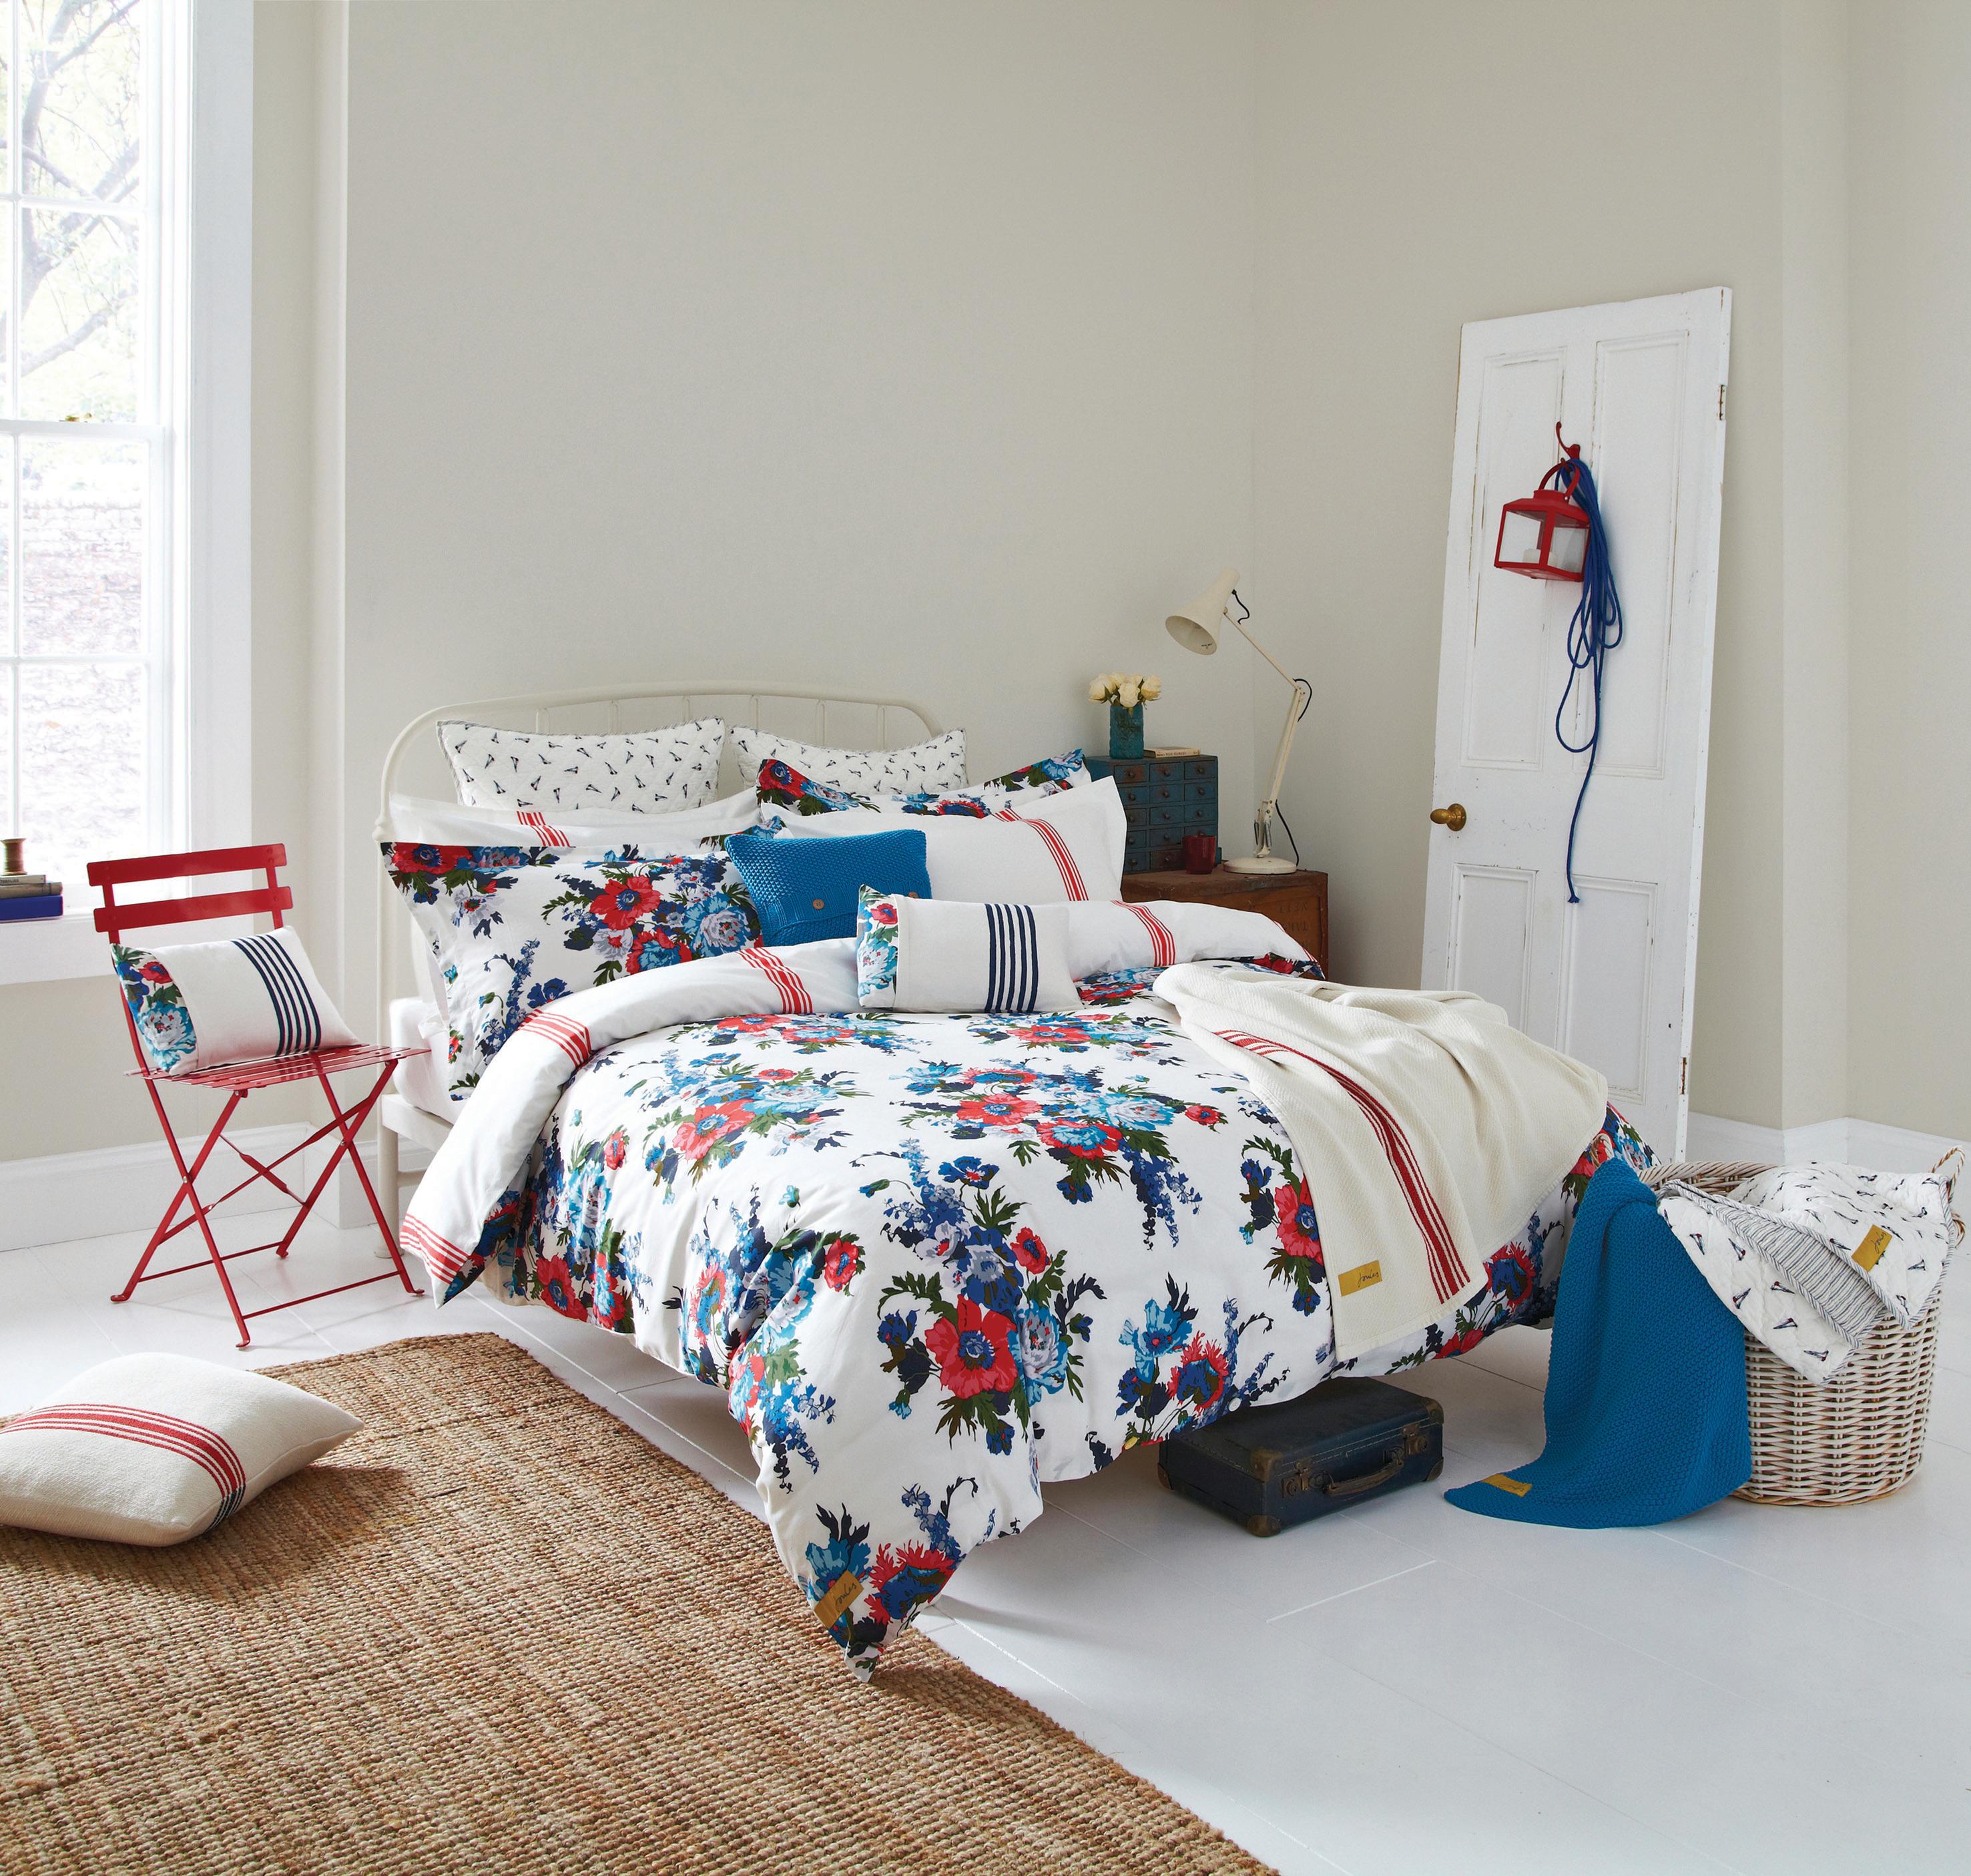 Verspieltes Schlafzimmer mit Blumenmuster #bettwäsche #kissen ©Bedeck Ltd.